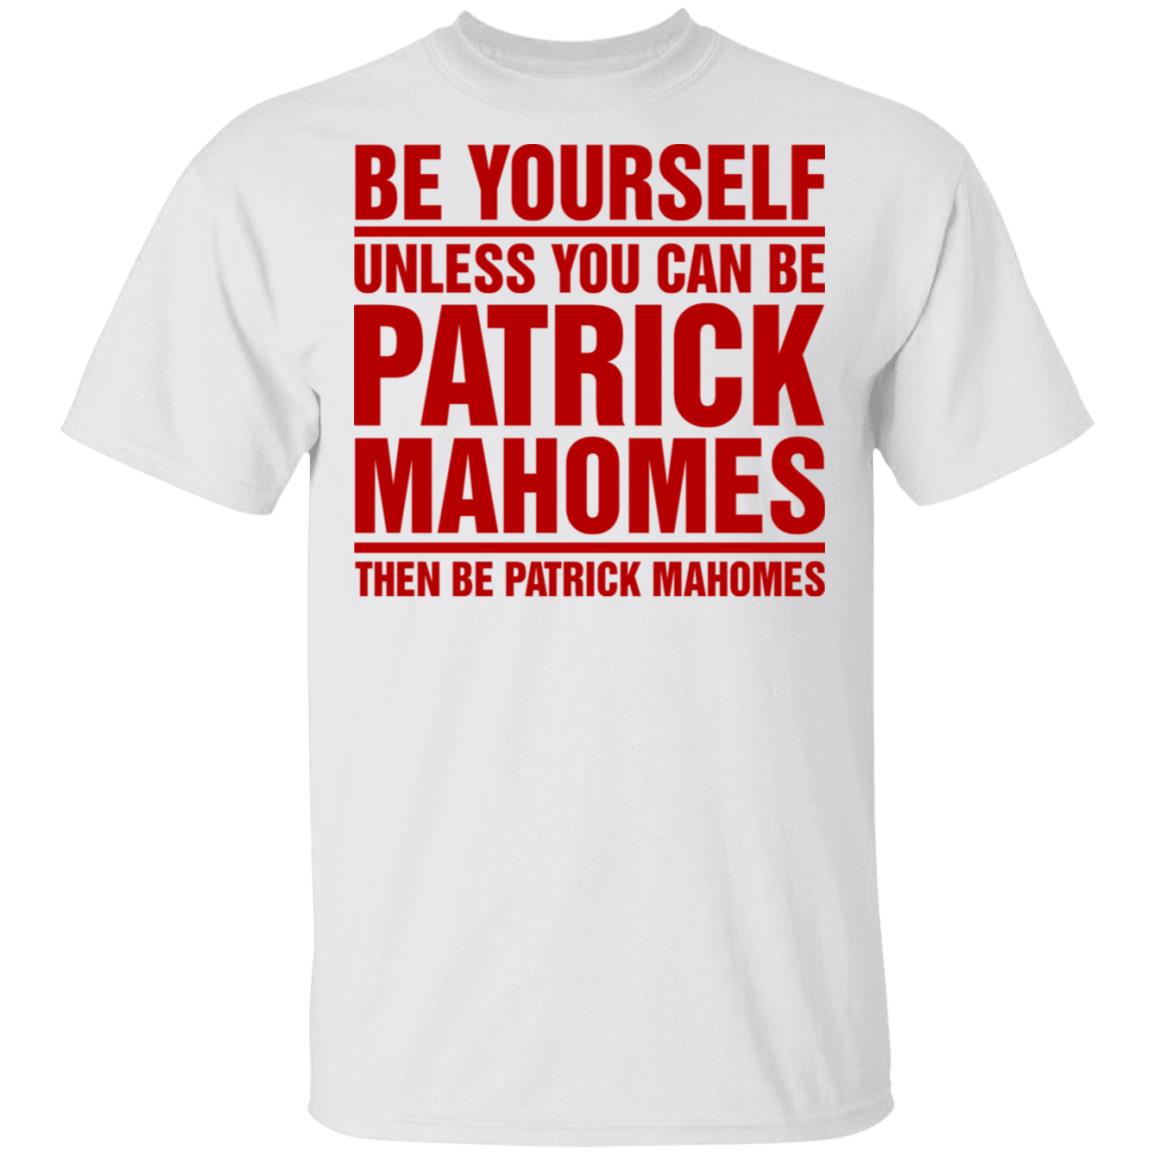 patrick mahomes shirt mens